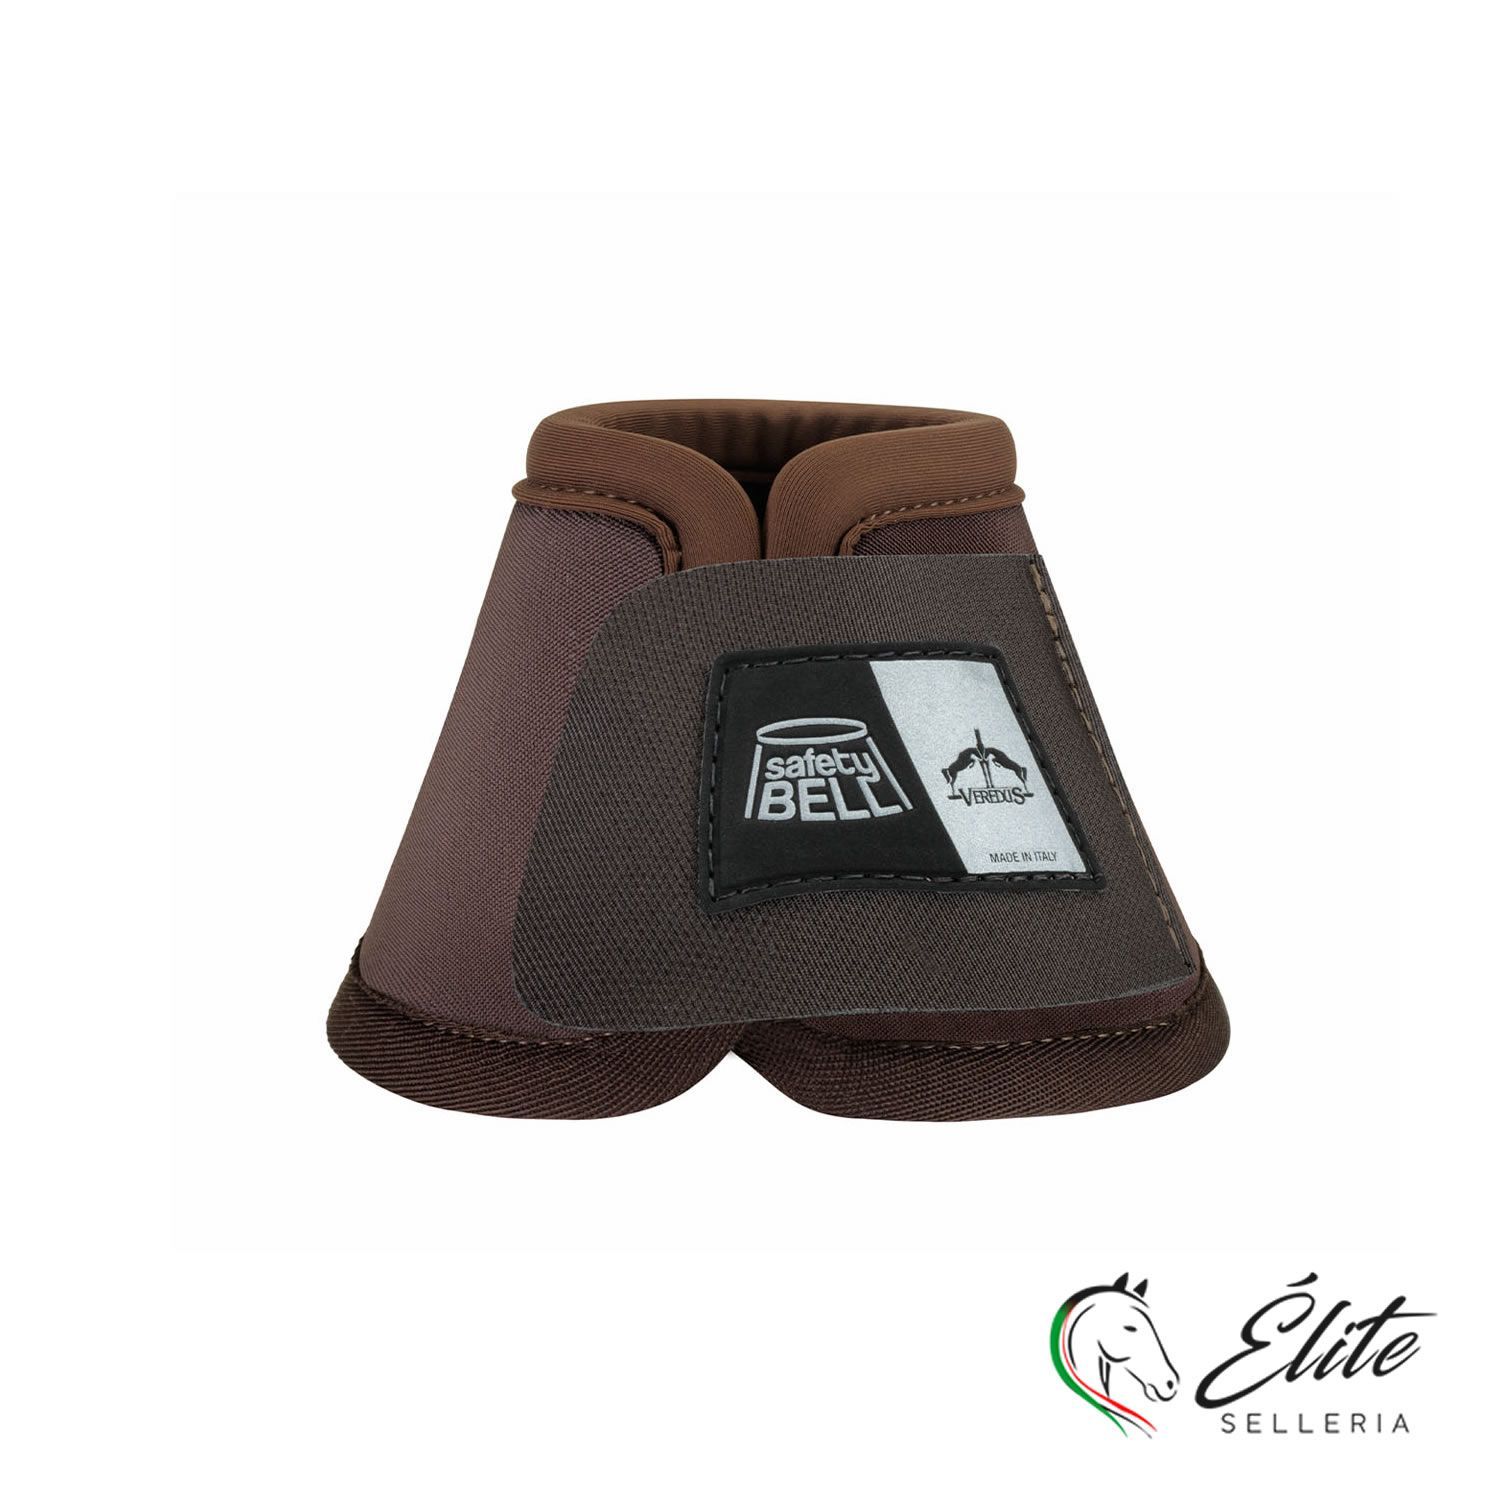 Vendita online Safety-Bell Light Brown - Selleria Élite del cavallo - Palermo - Sicilia- Italia